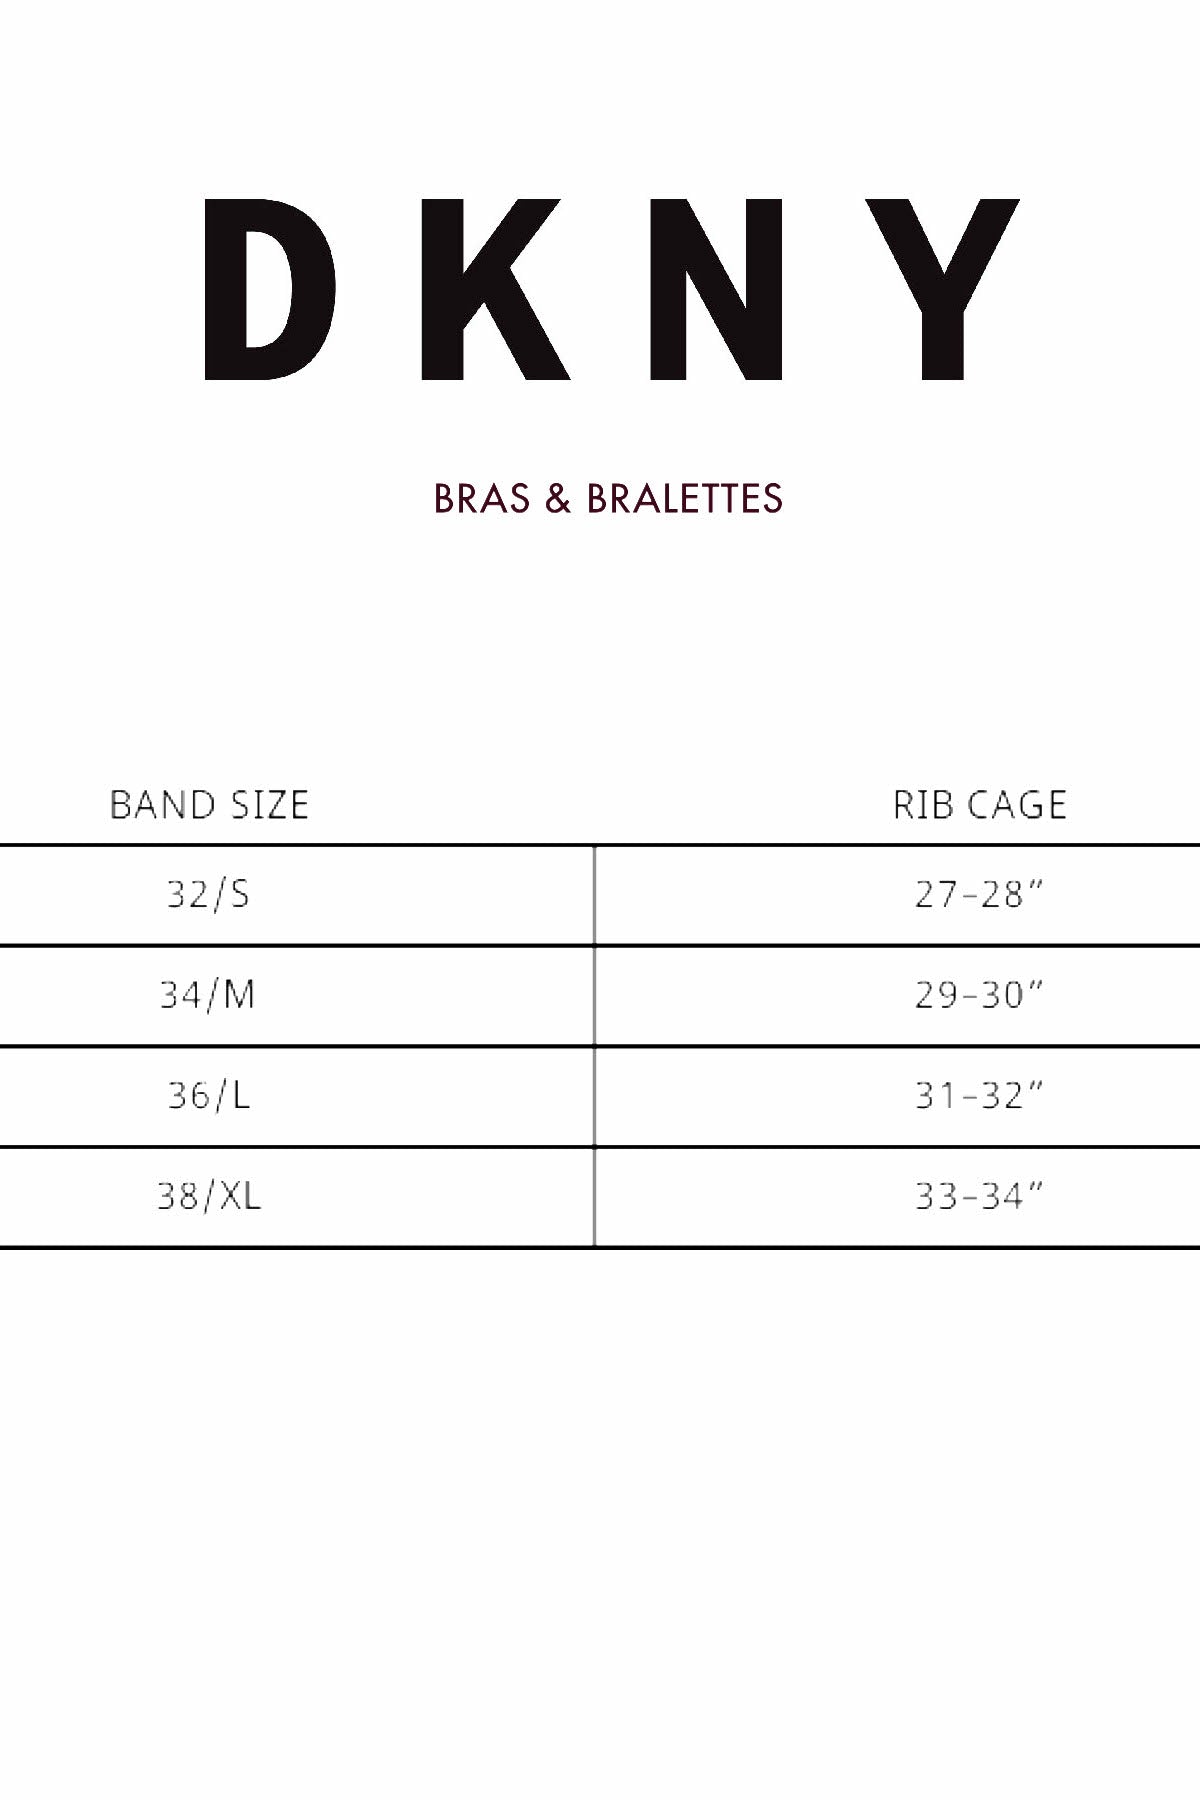 Dkny Litewear Seamless Ribbed Crop Top Bralette Dk4023 Grey – CheapUndies